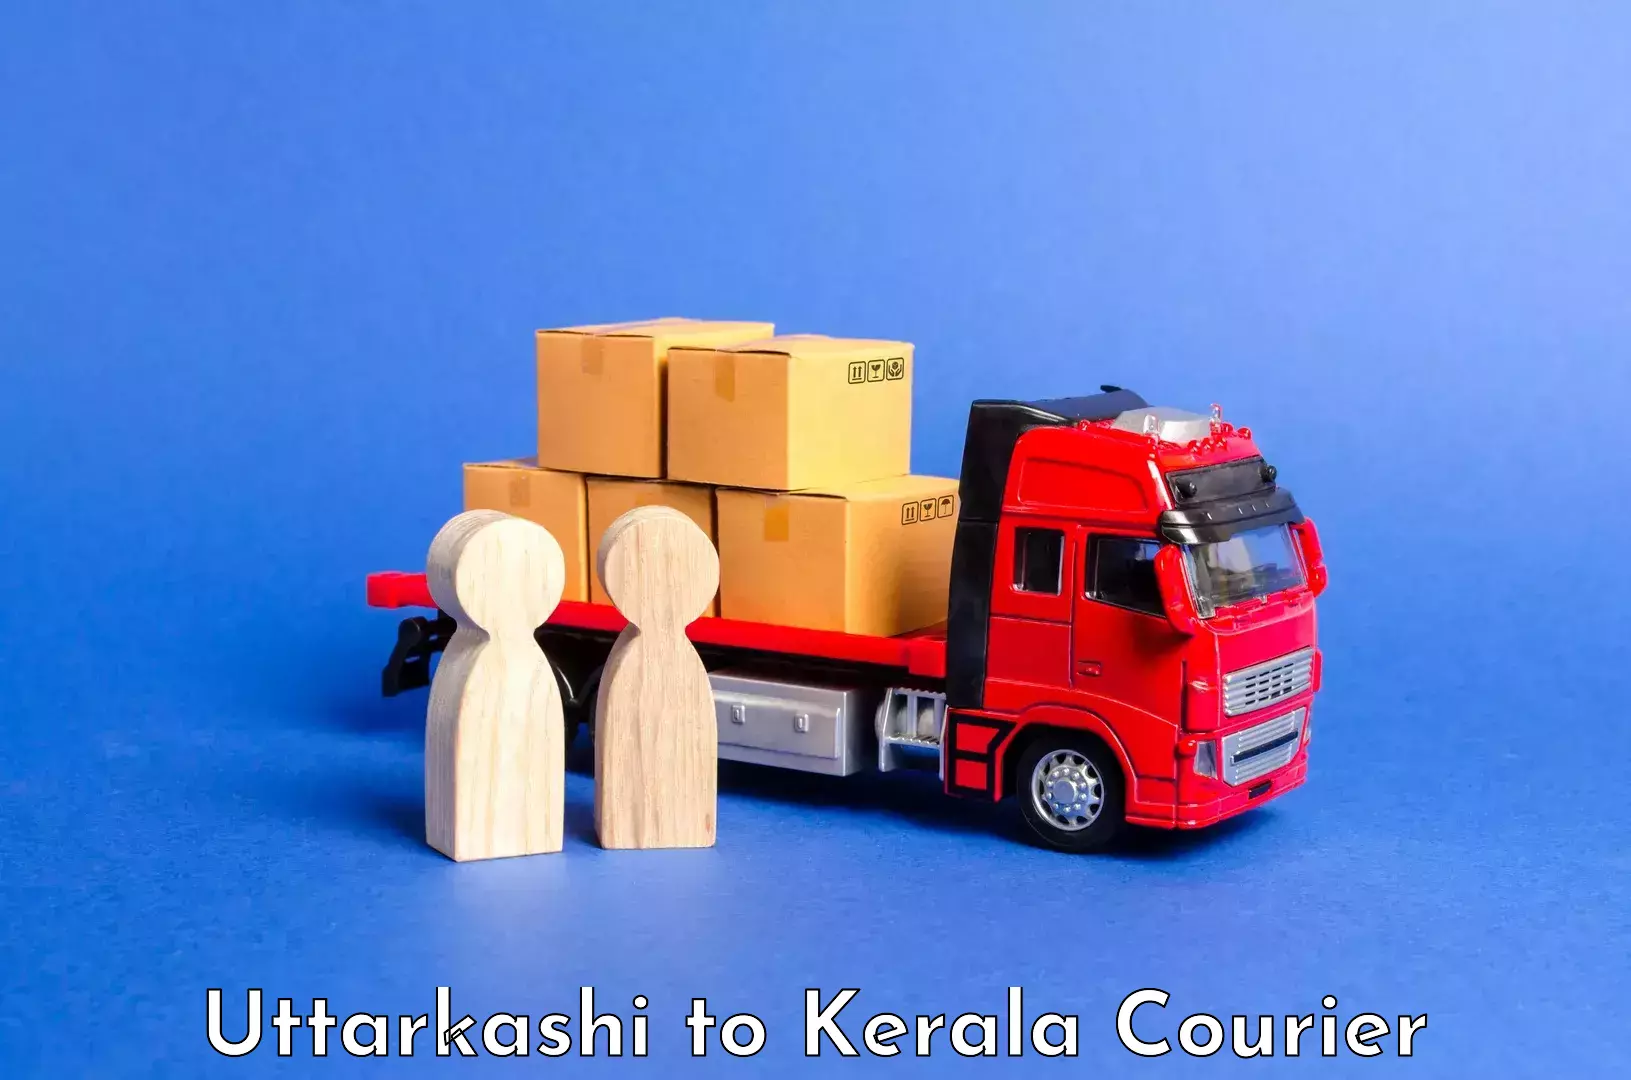 Luggage shipping service Uttarkashi to Kerala